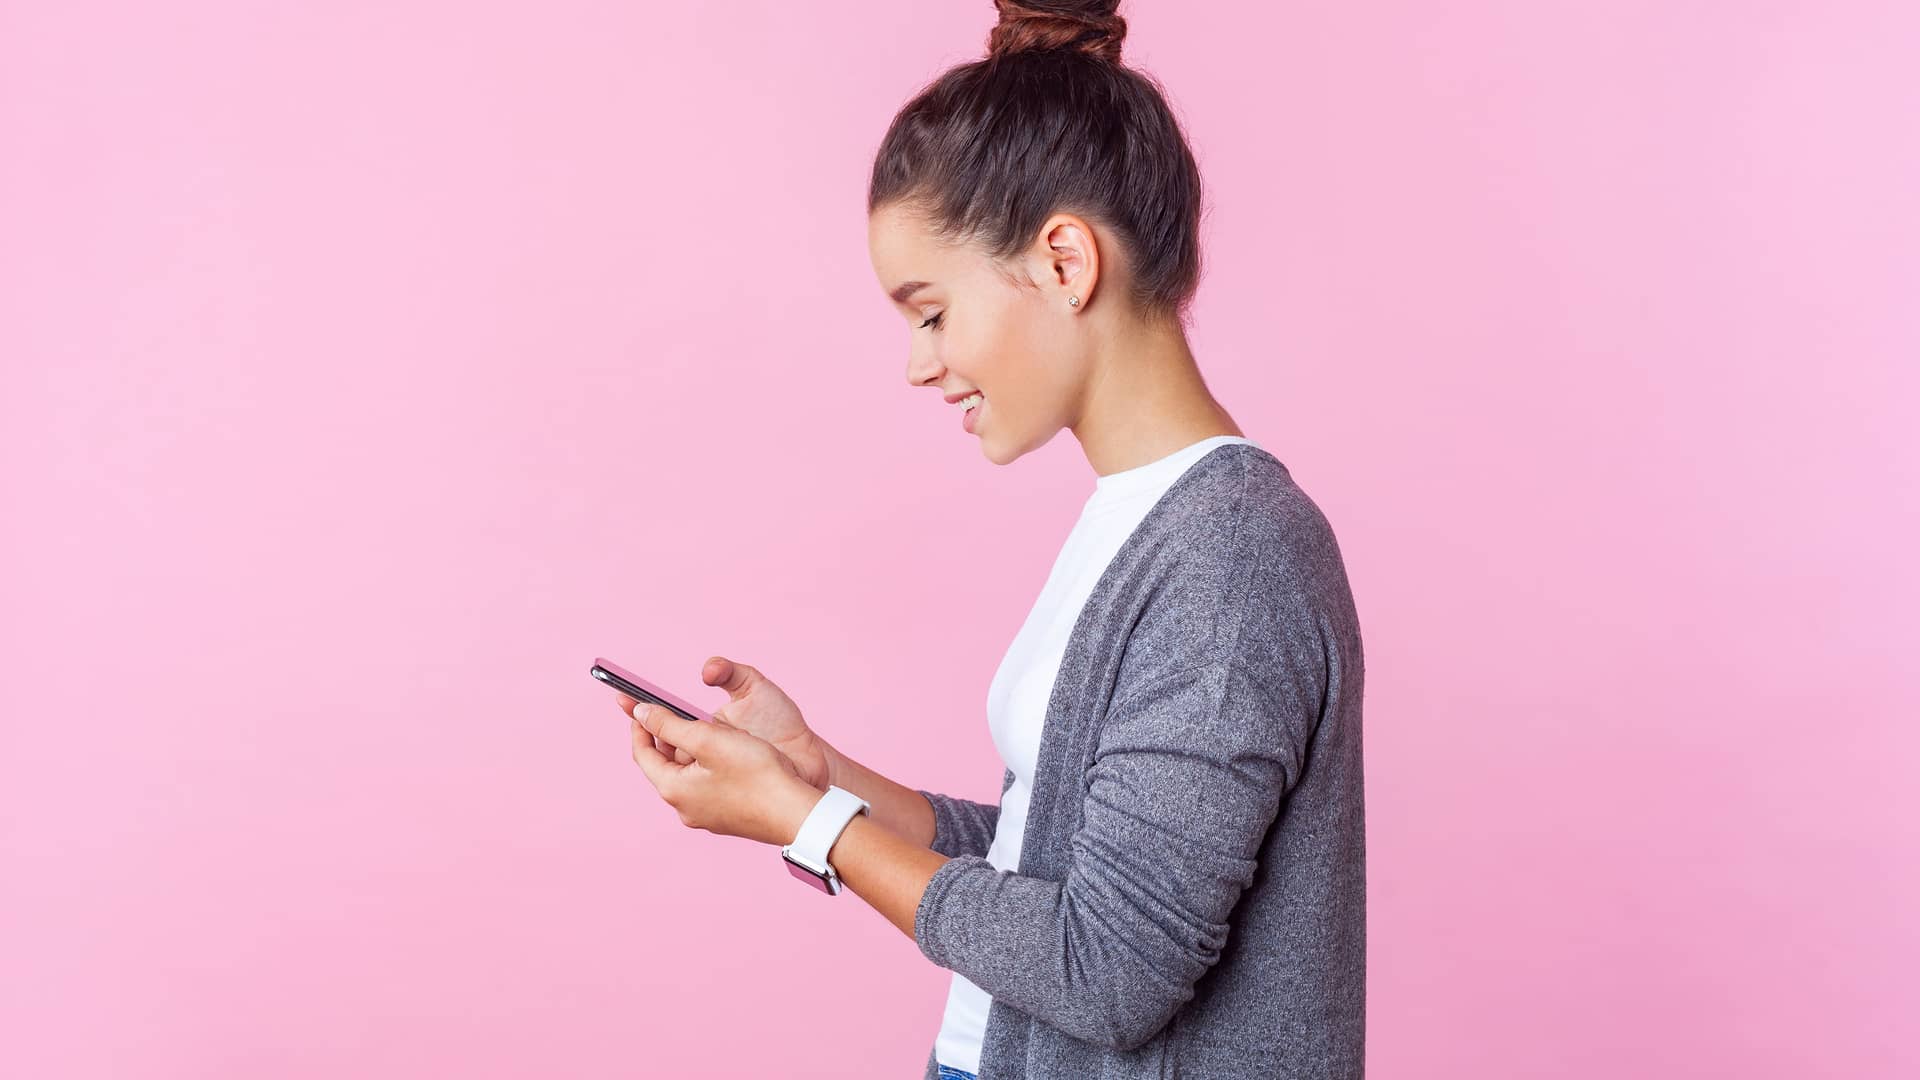 Adolescente usando su smartphone simboliza tarifa móvil prepago de finetwork